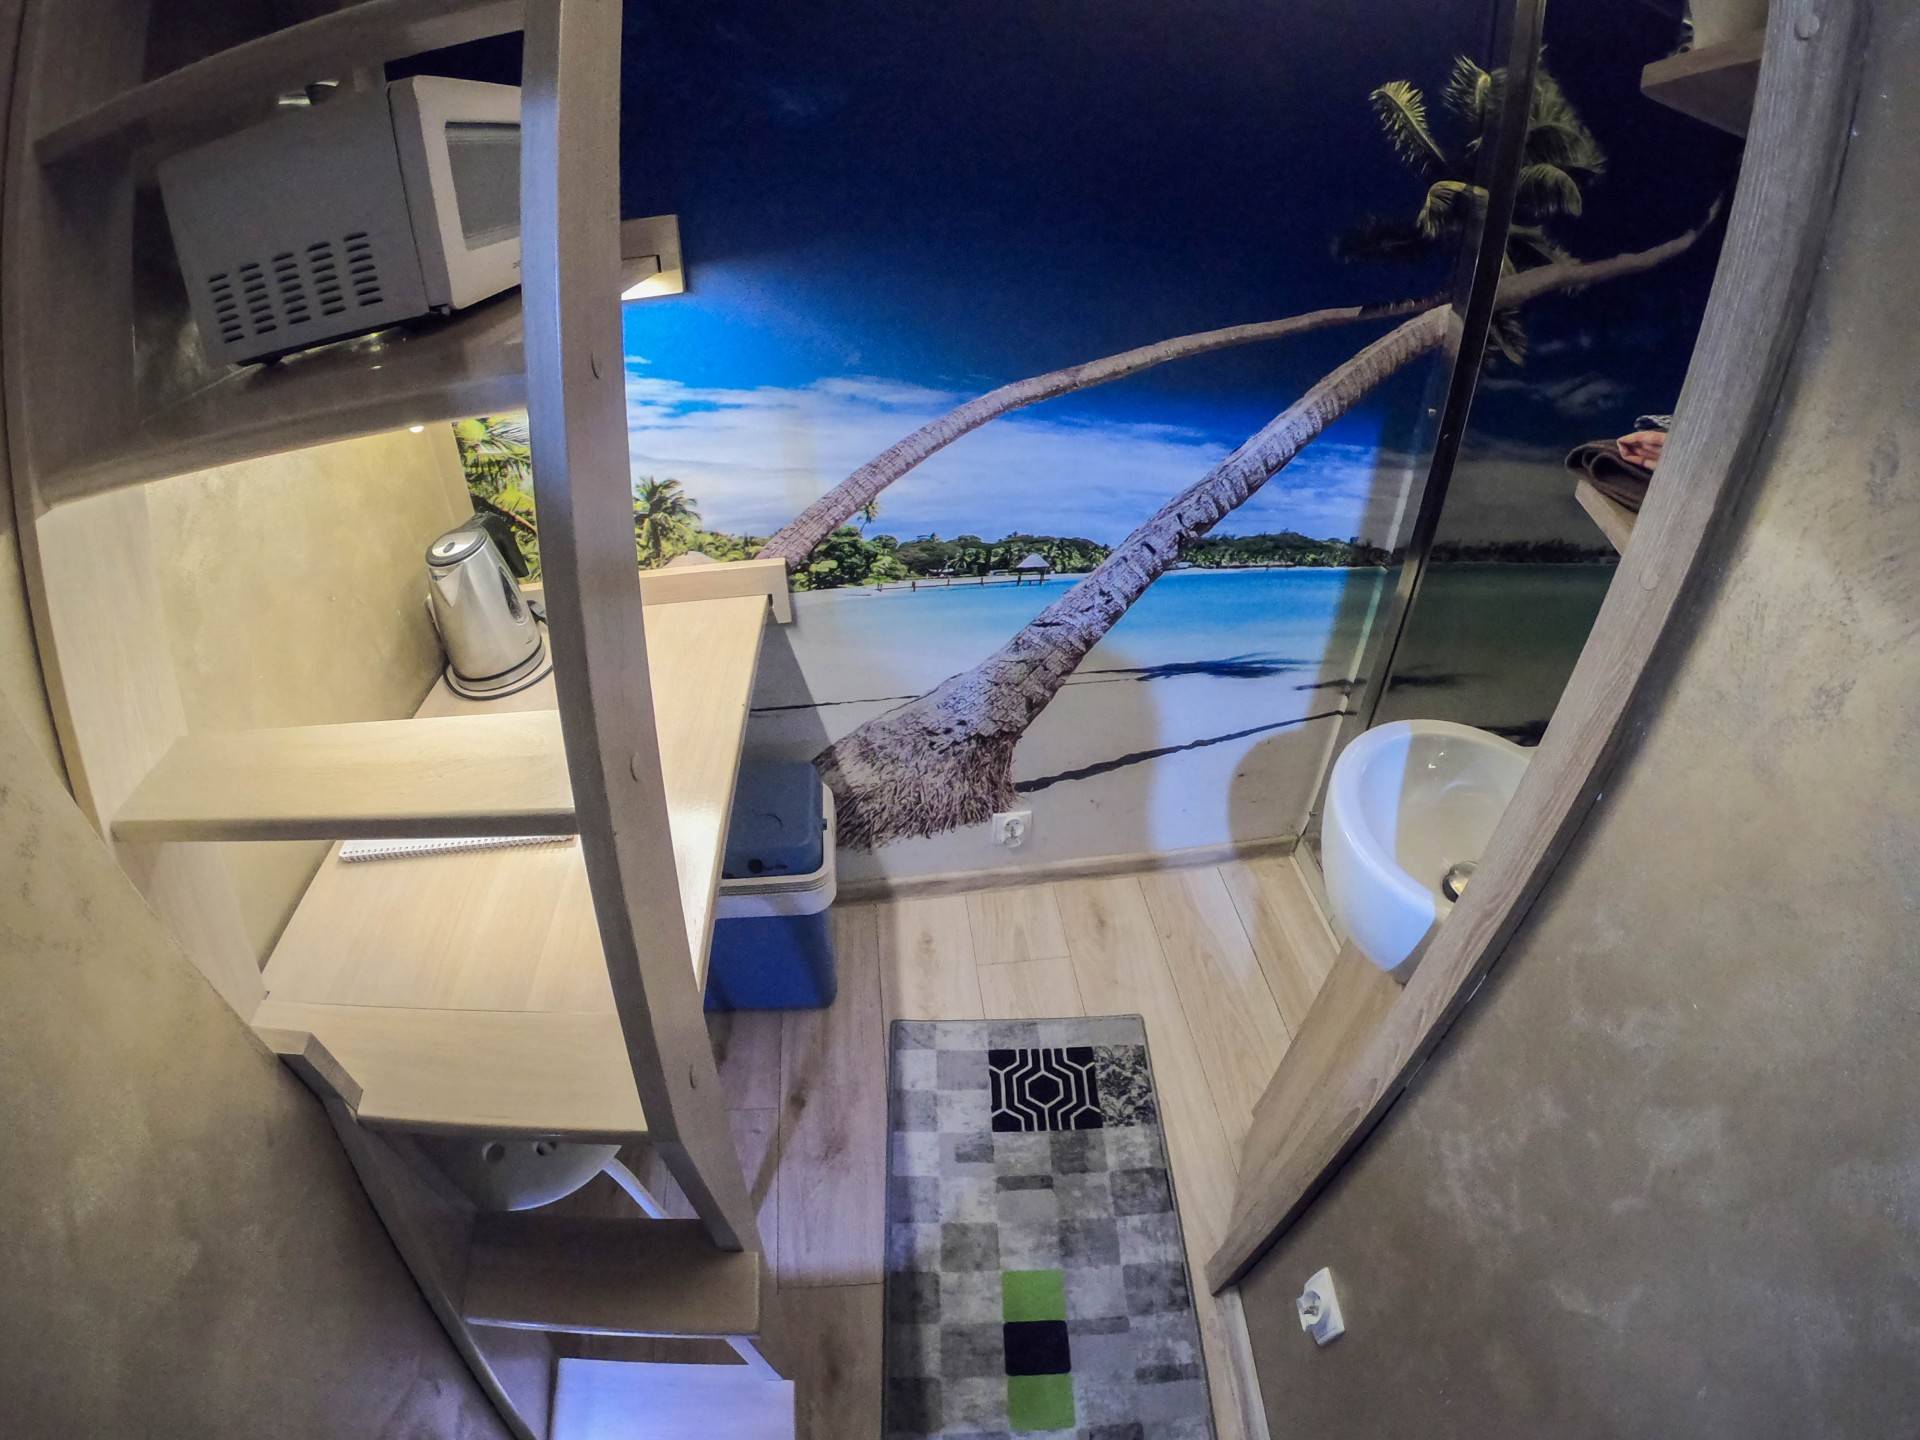 Turyści pokochali najmniejszy "apartament" świata! 2,5 metra do wynajęcia